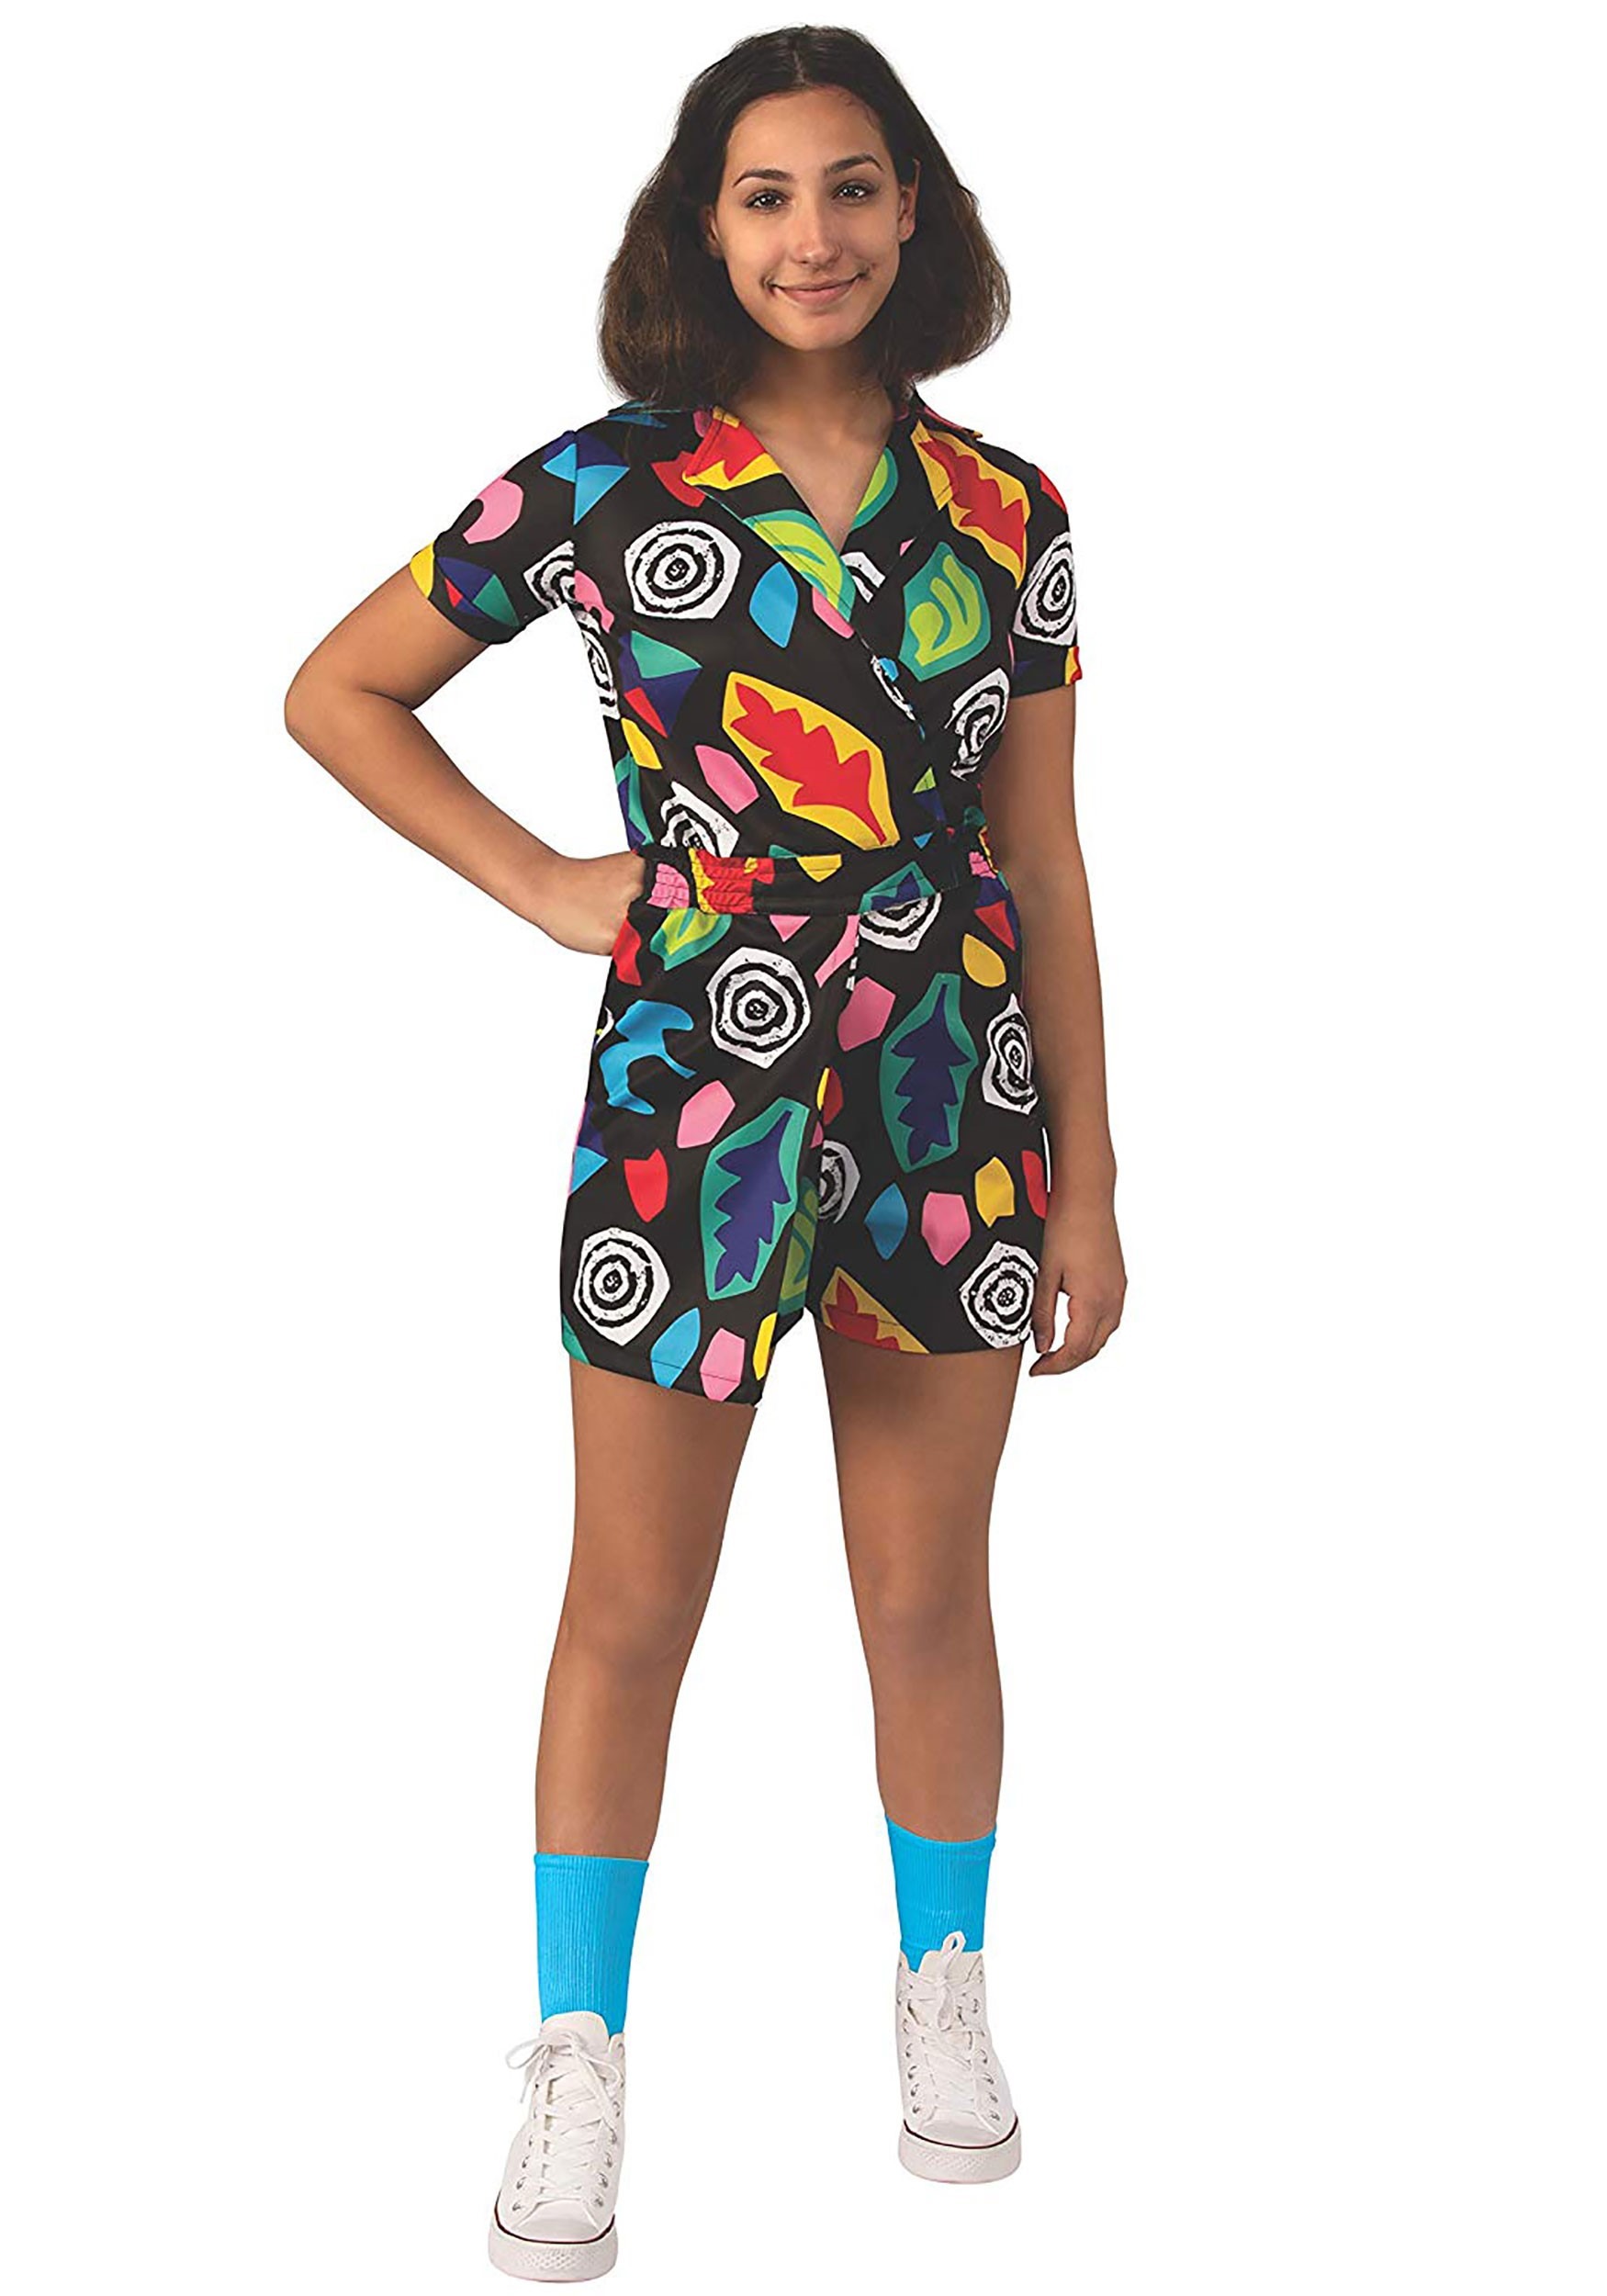 Eleven's Mall Dress Kids Costume Stranger Things